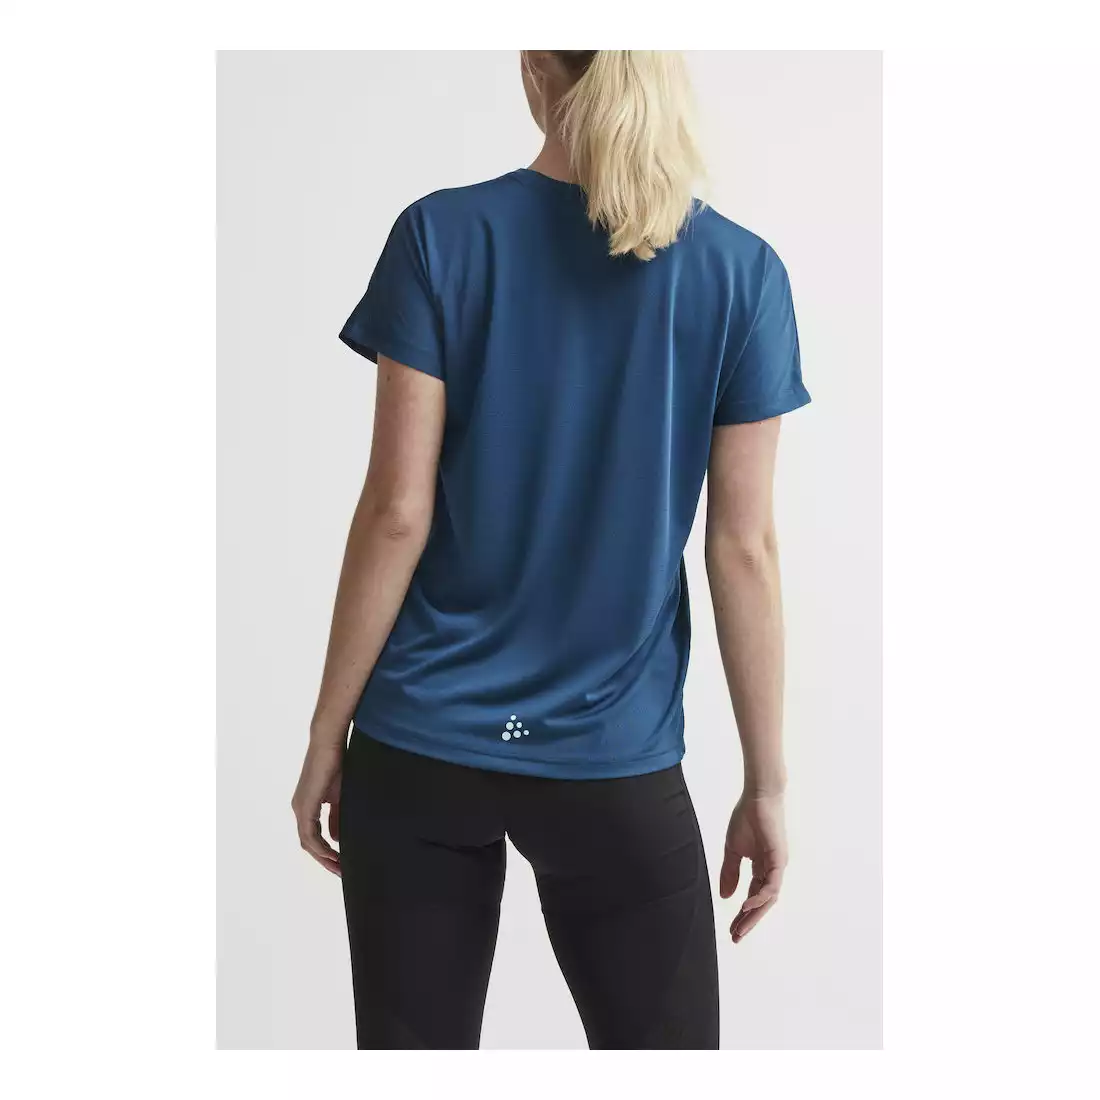 CRAFT EAZE MESH damska koszulka sportowa / do biegania niebieski 1907019-373000